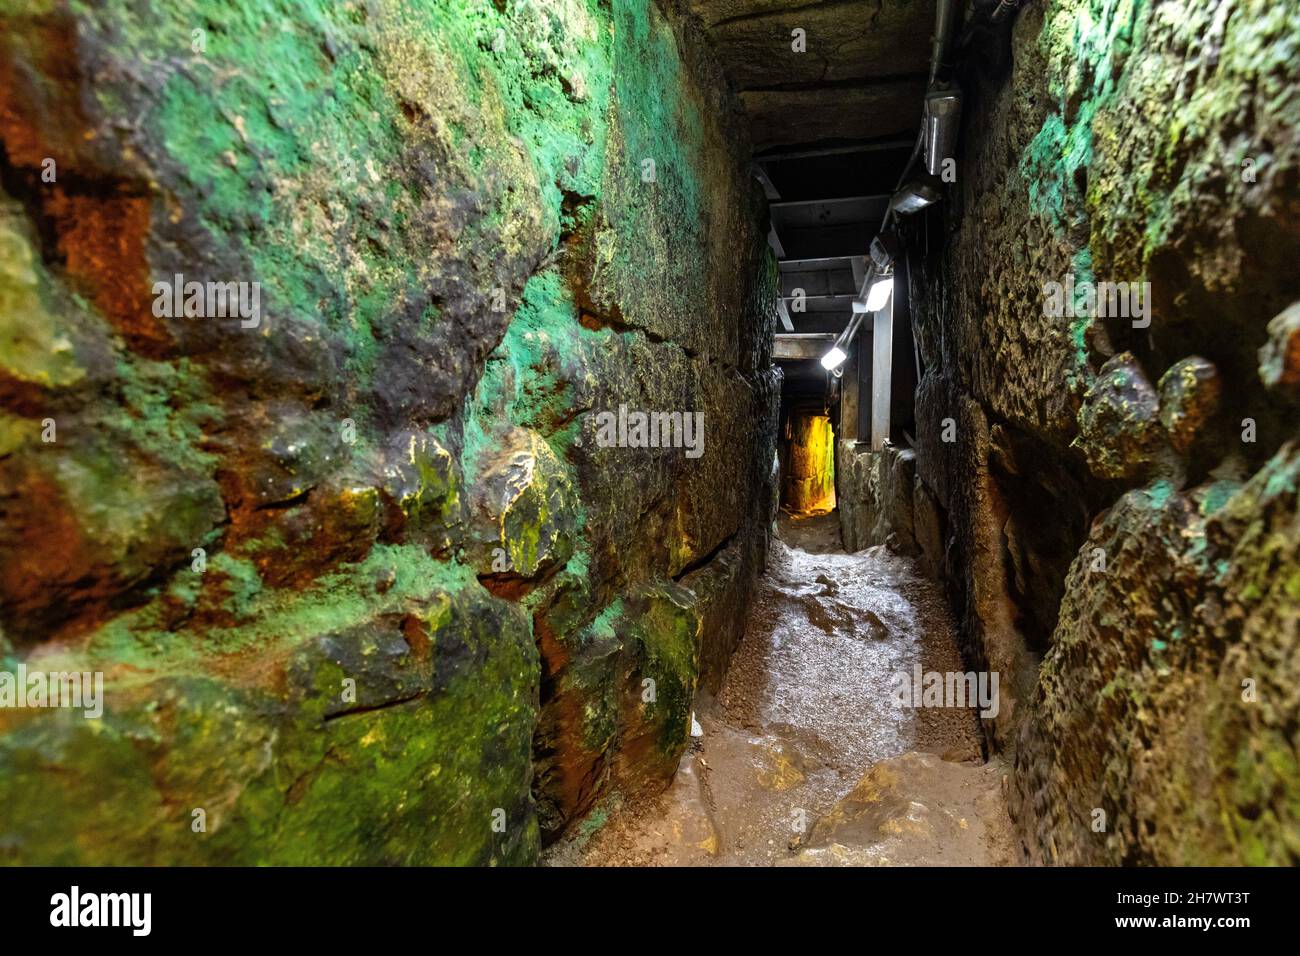 Jerusalem, Israel - 13. Oktober 2017: Siloam-Tunnel, bekannt als Hezekijas Tunnel, unterirdischer Pfad unter der alten Stadt Davids im Kidron-Tal Stockfoto